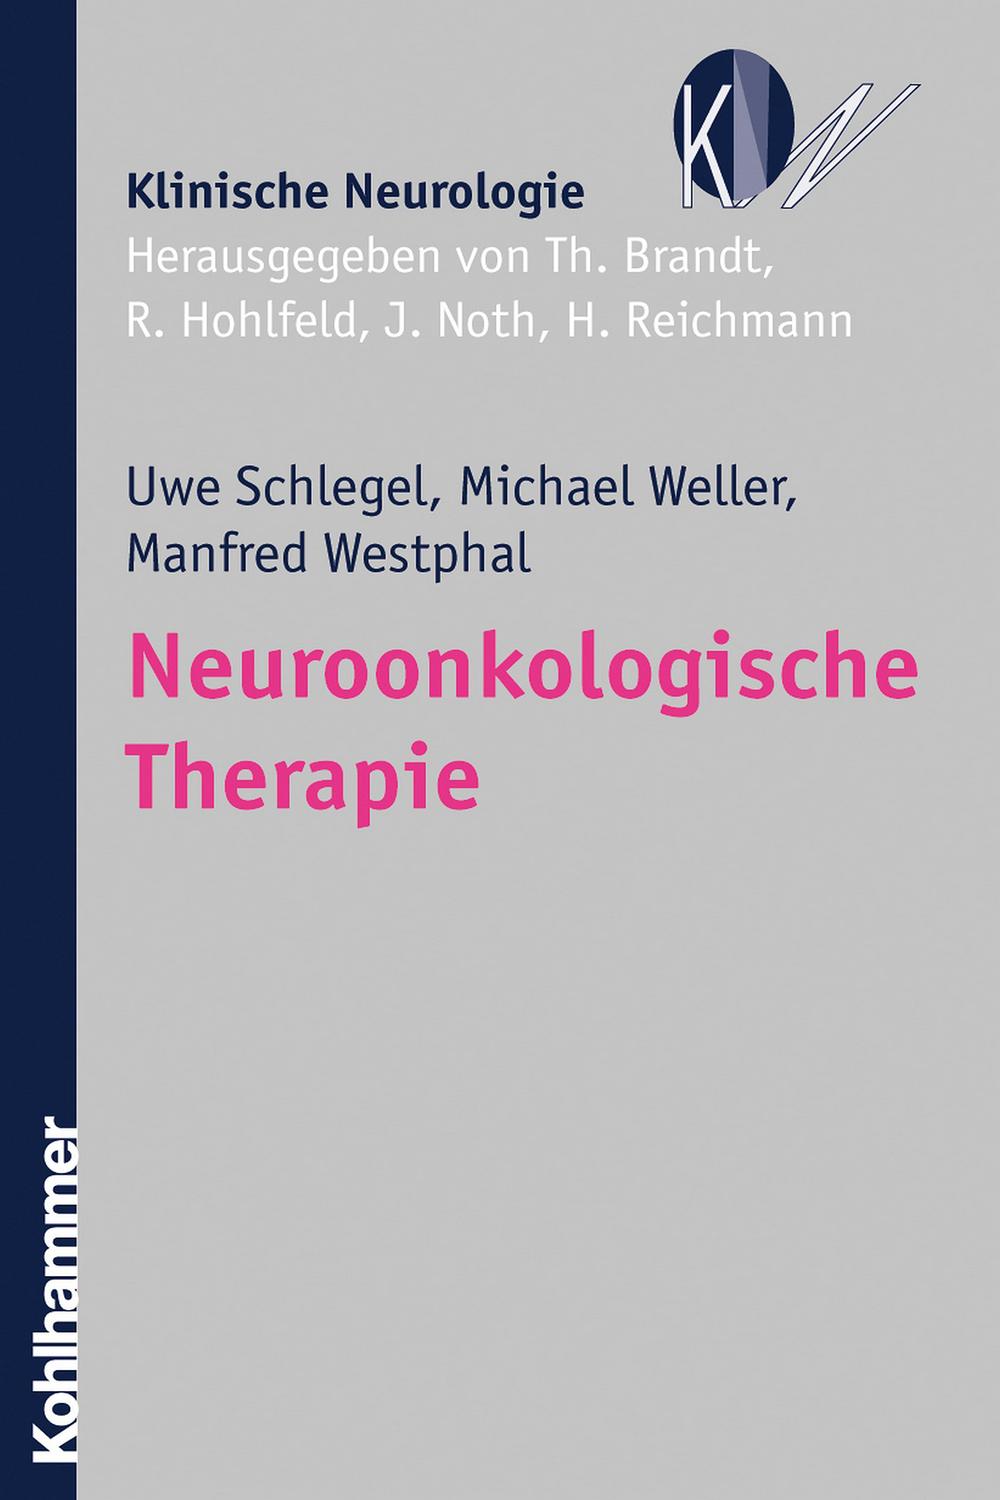 Neuroonkologische Therapie - Uwe Schlegel, Michael Weller, Manfred Westphal